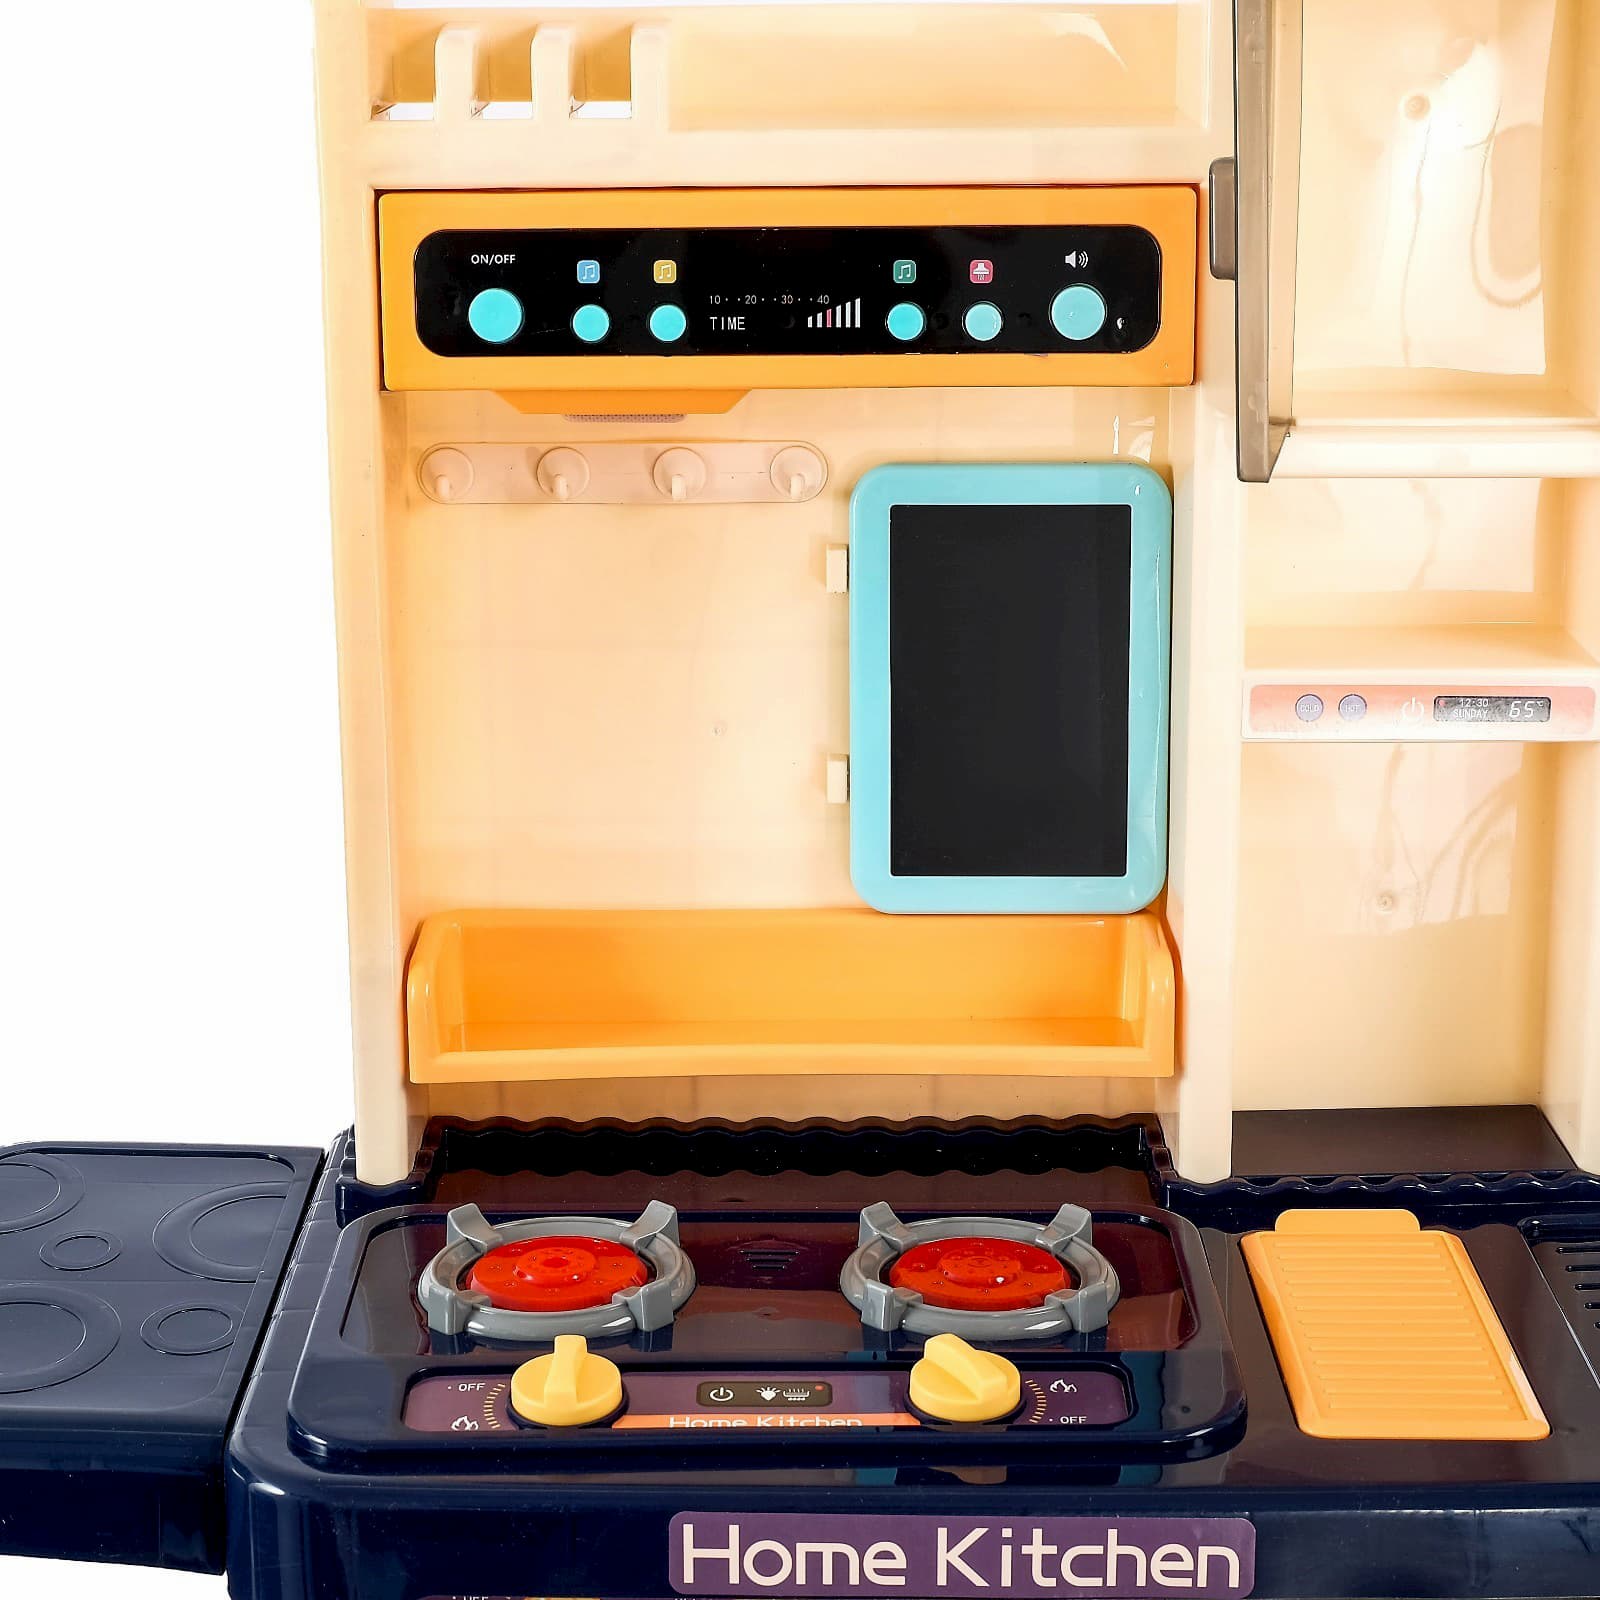 Детская игровая интерактивная кухня Modern Kitchen 889-161, с водой, с паром, 65 аксессуаров, высота 94 см. / Синяя